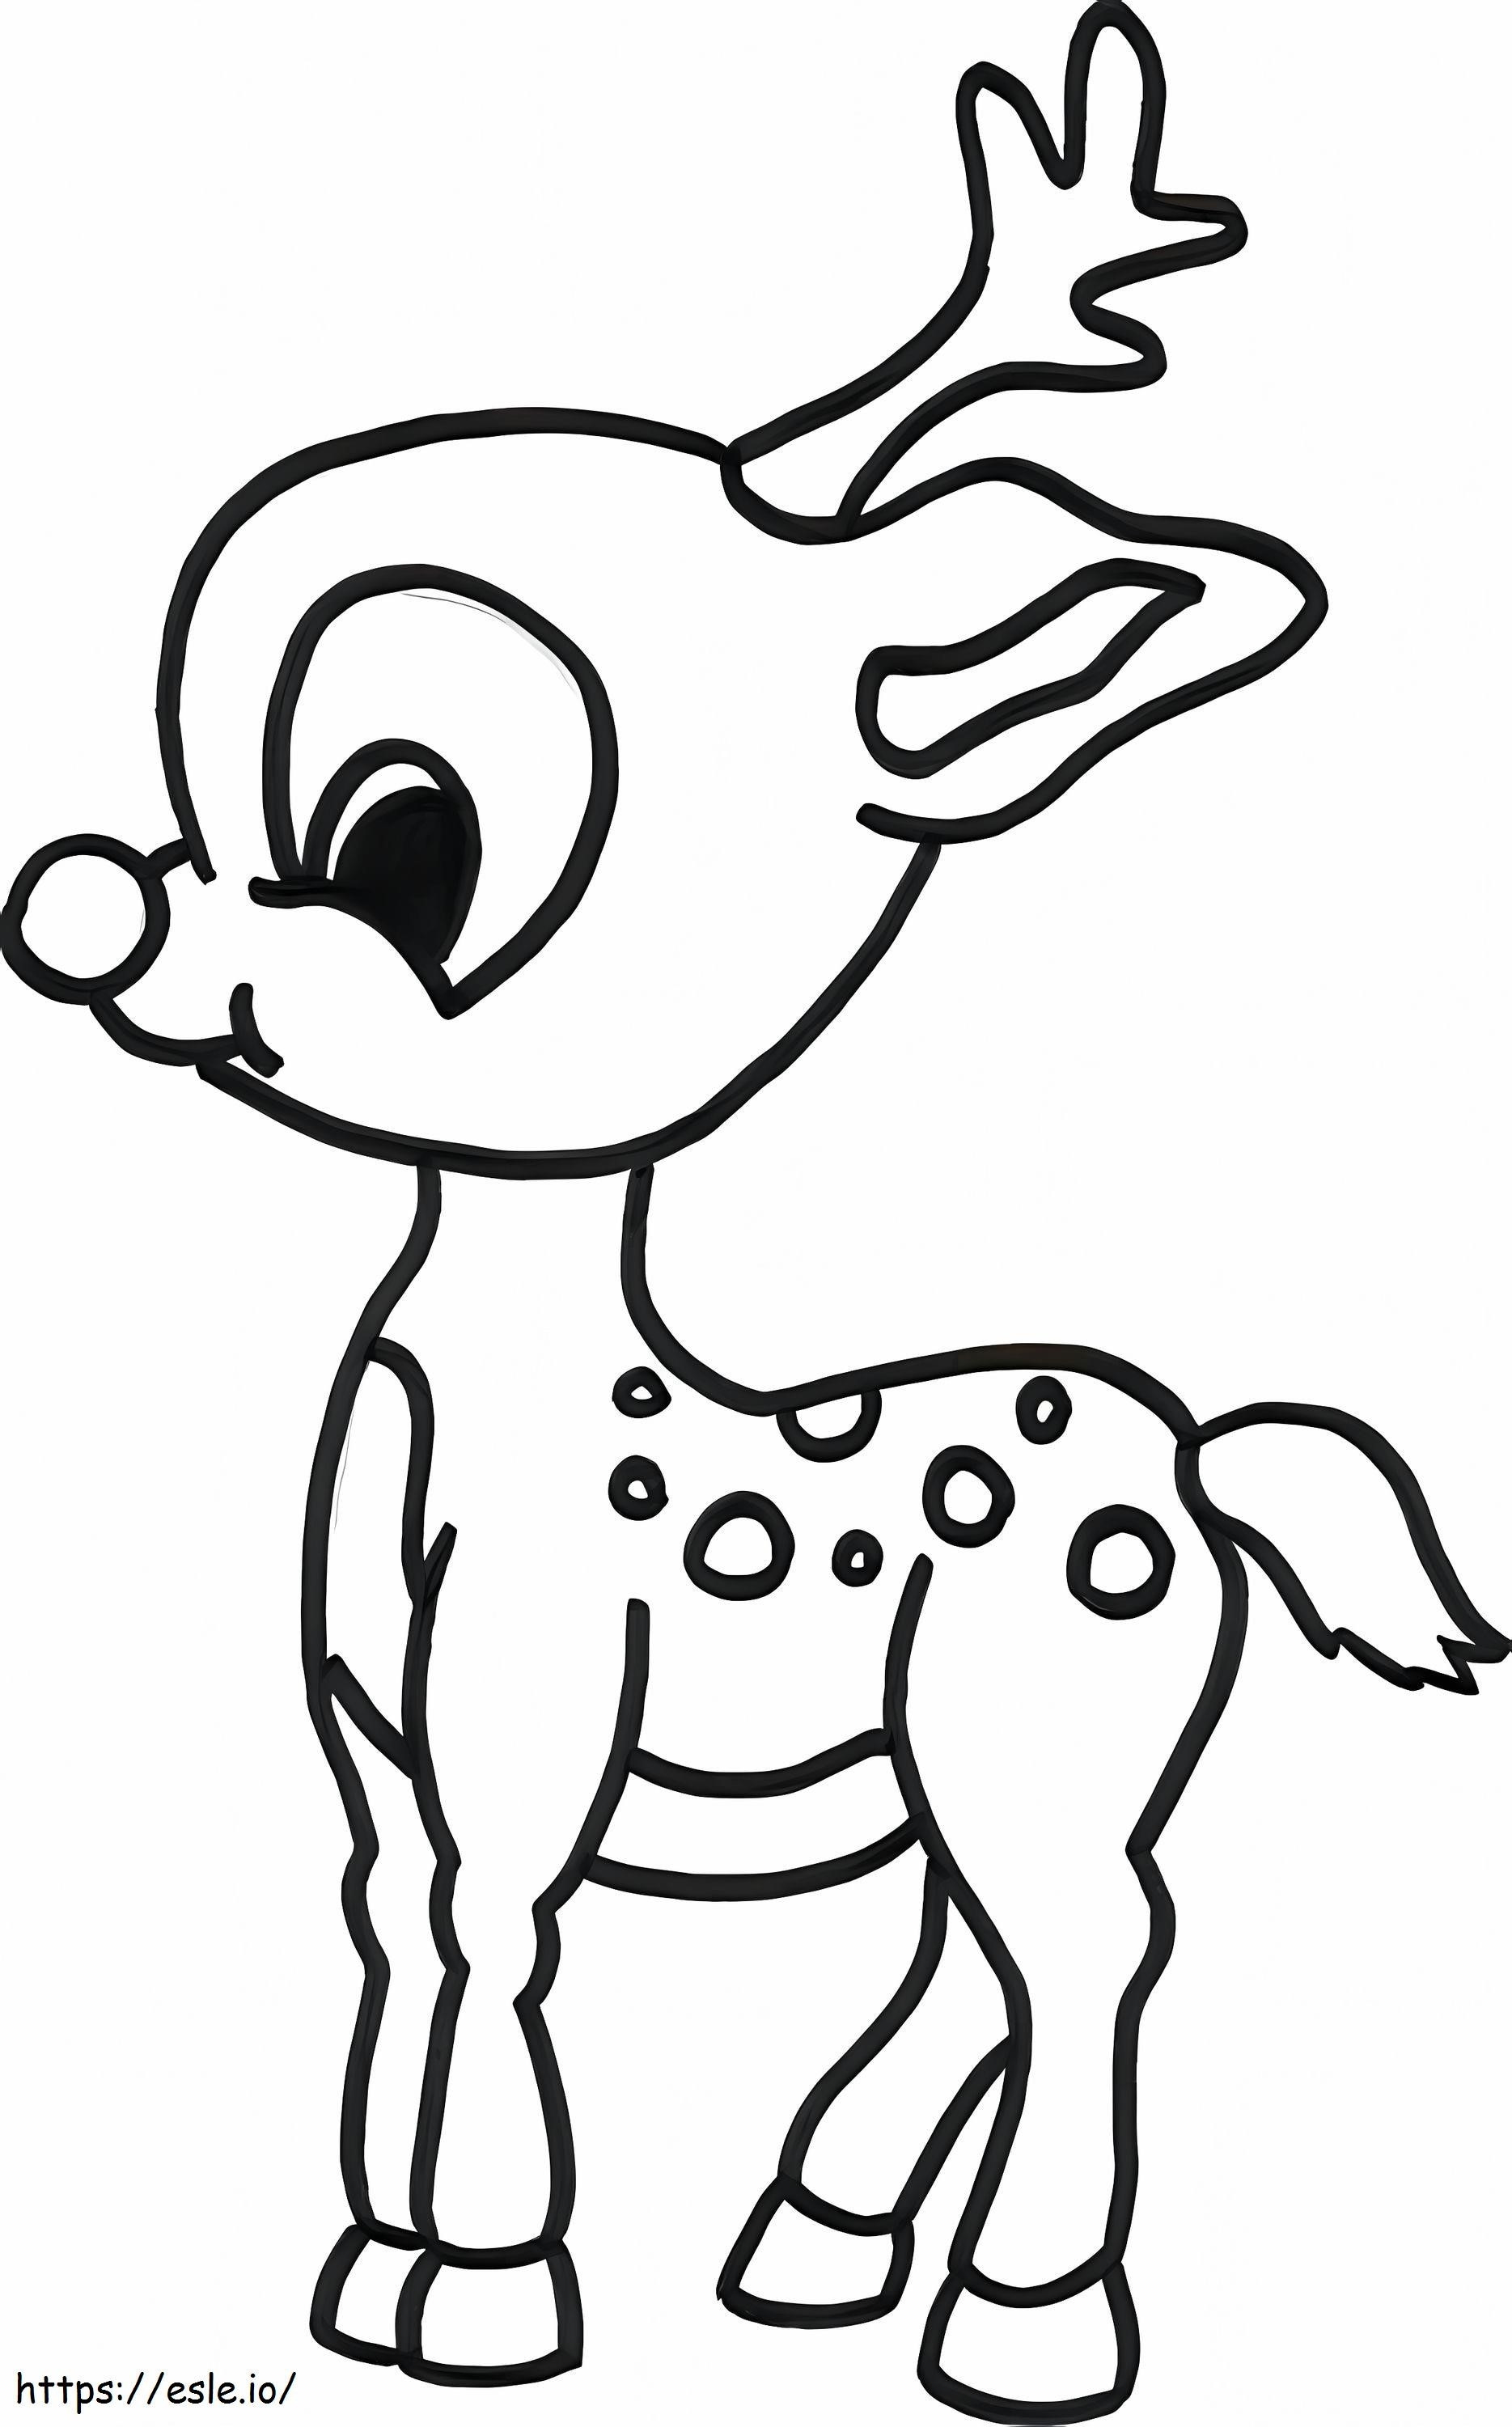 Baby Reindeer coloring page